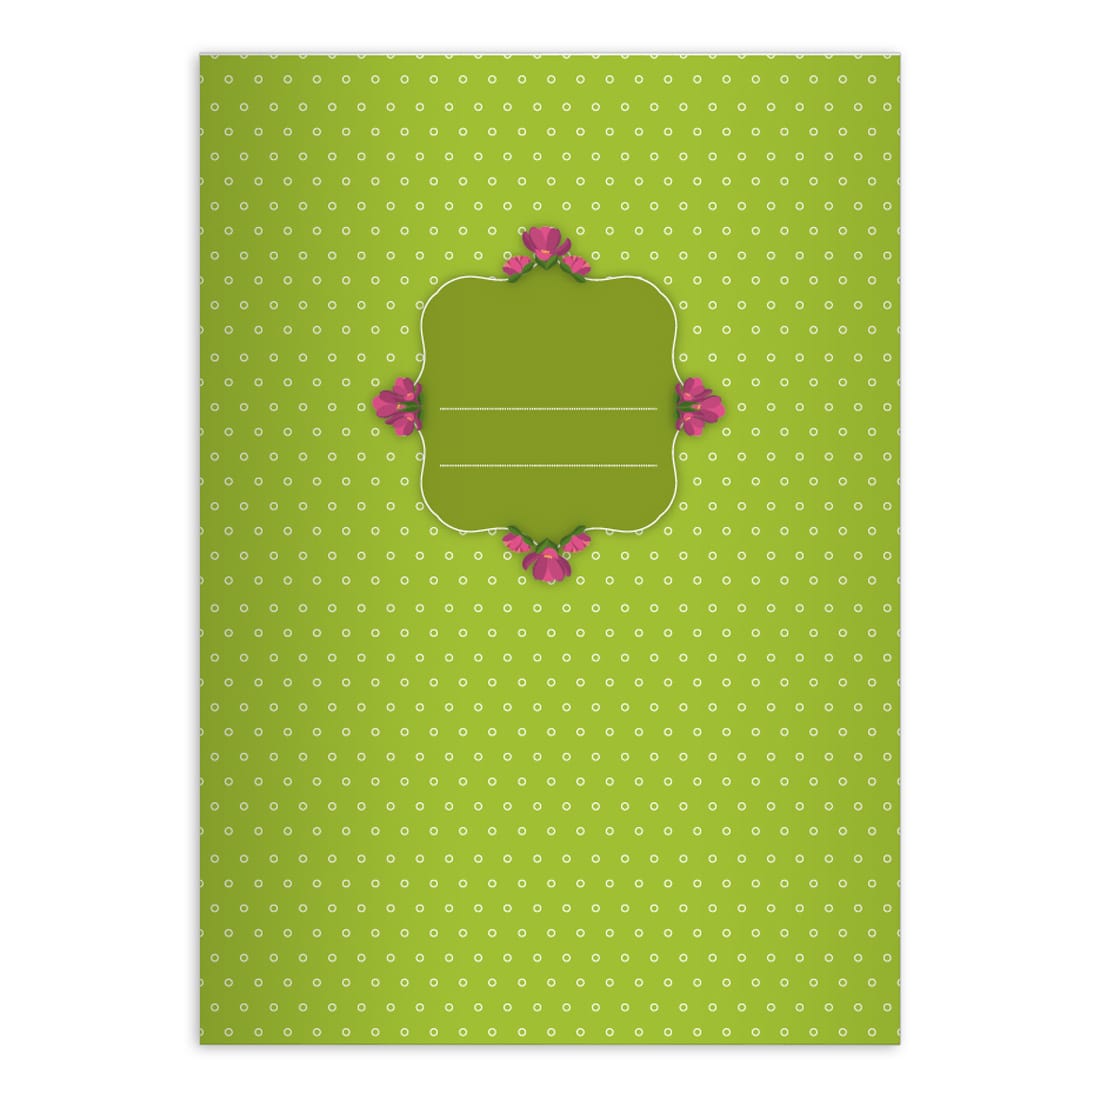 Kartenkaufrausch: Hübsches Mädchen Notizheft/ Schulheft aus unserer floralen Papeterie in grün